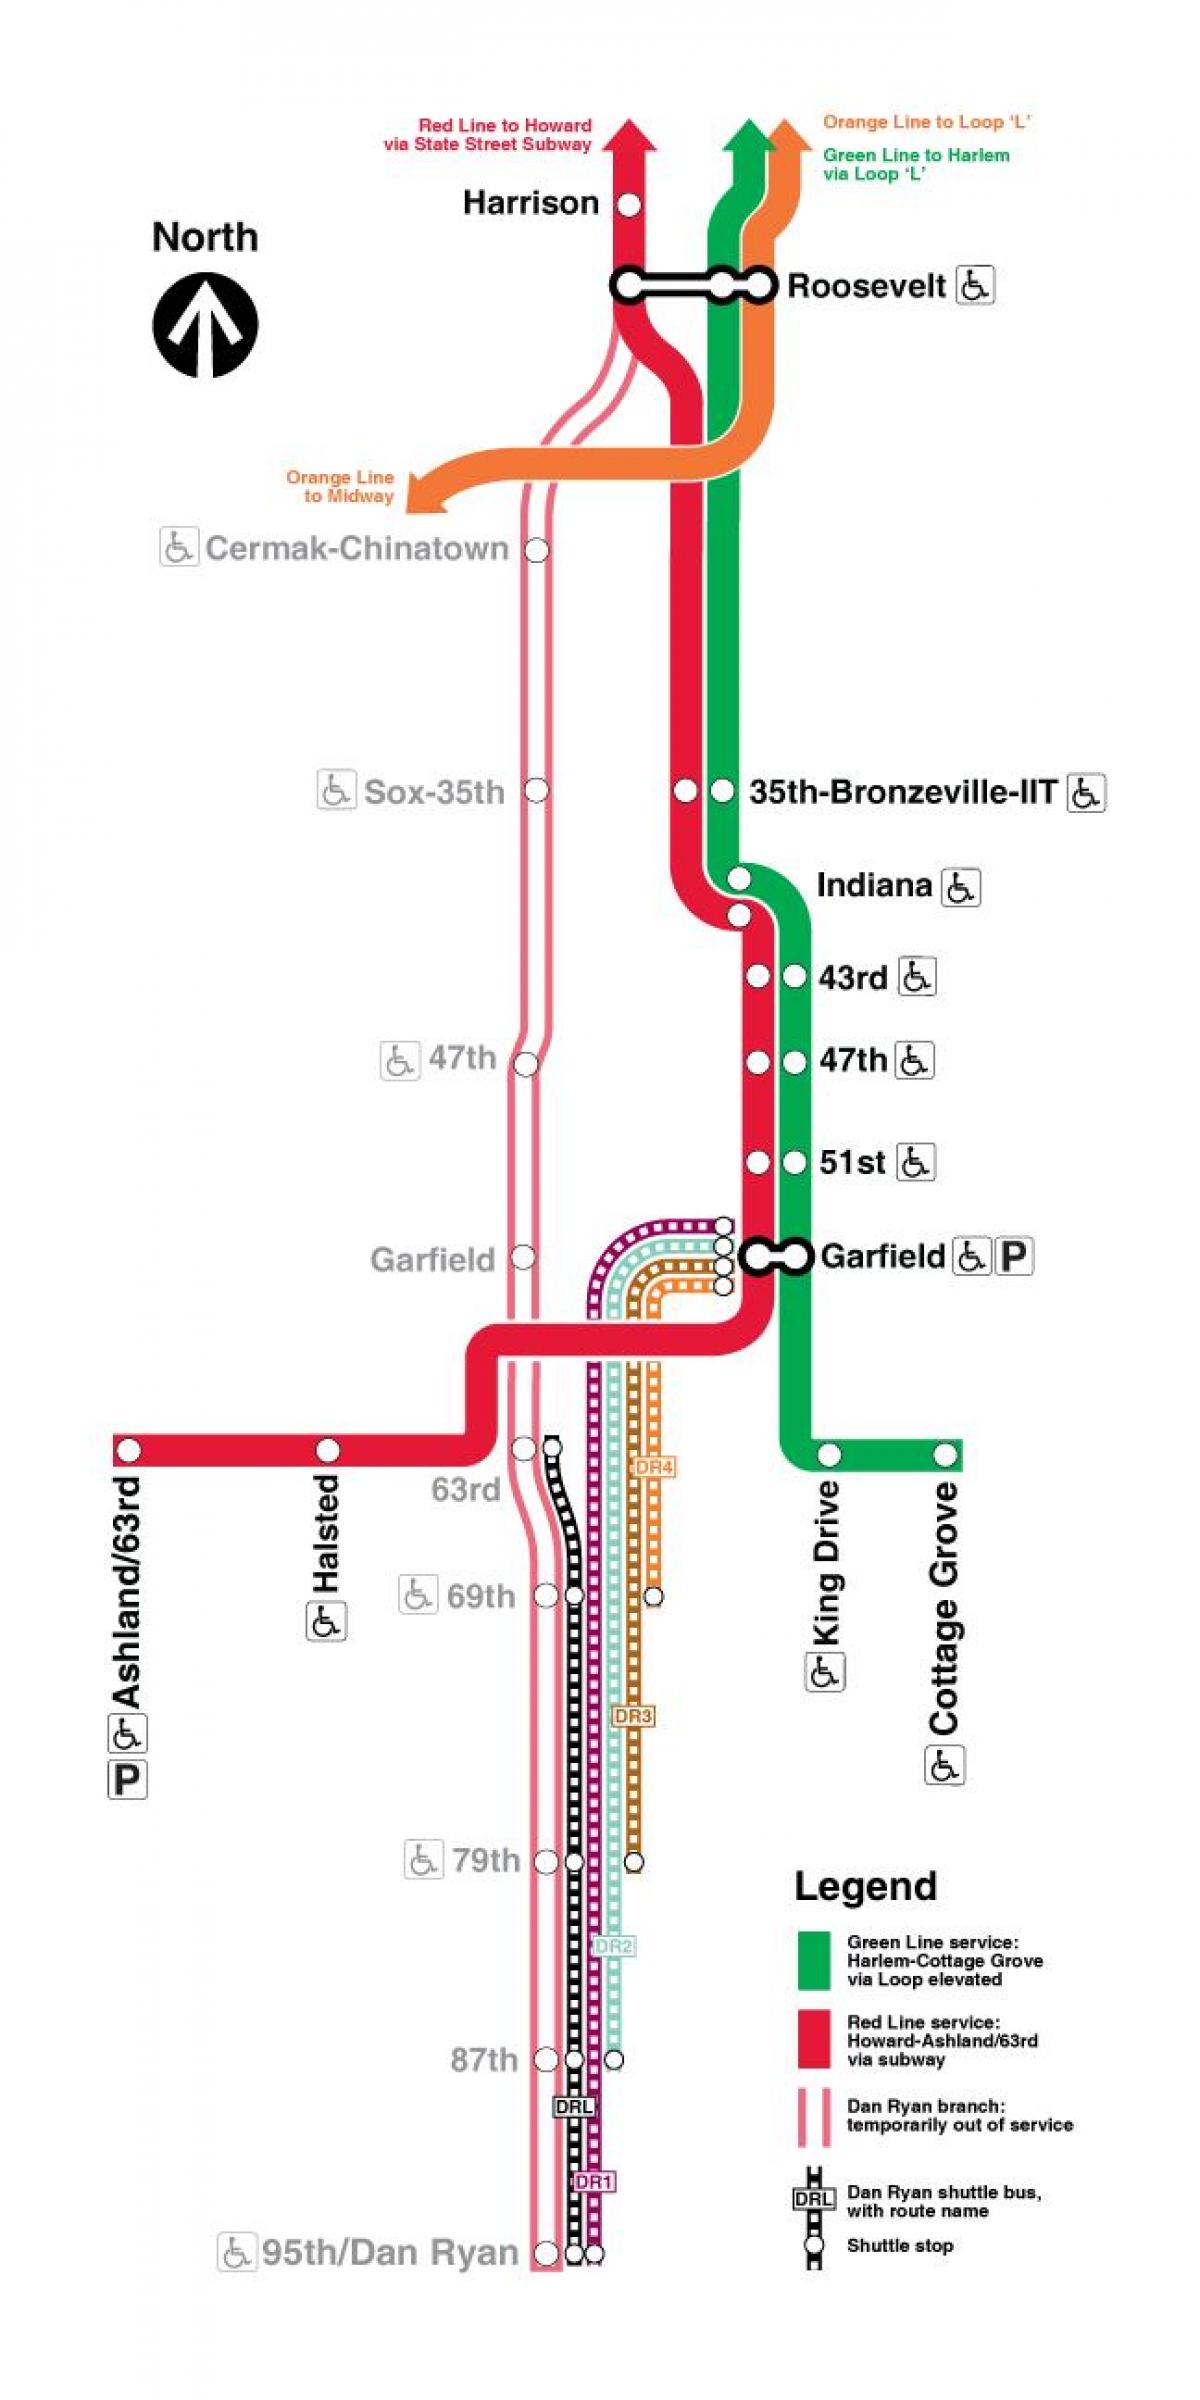 Chicago carte du train de la ligne rouge